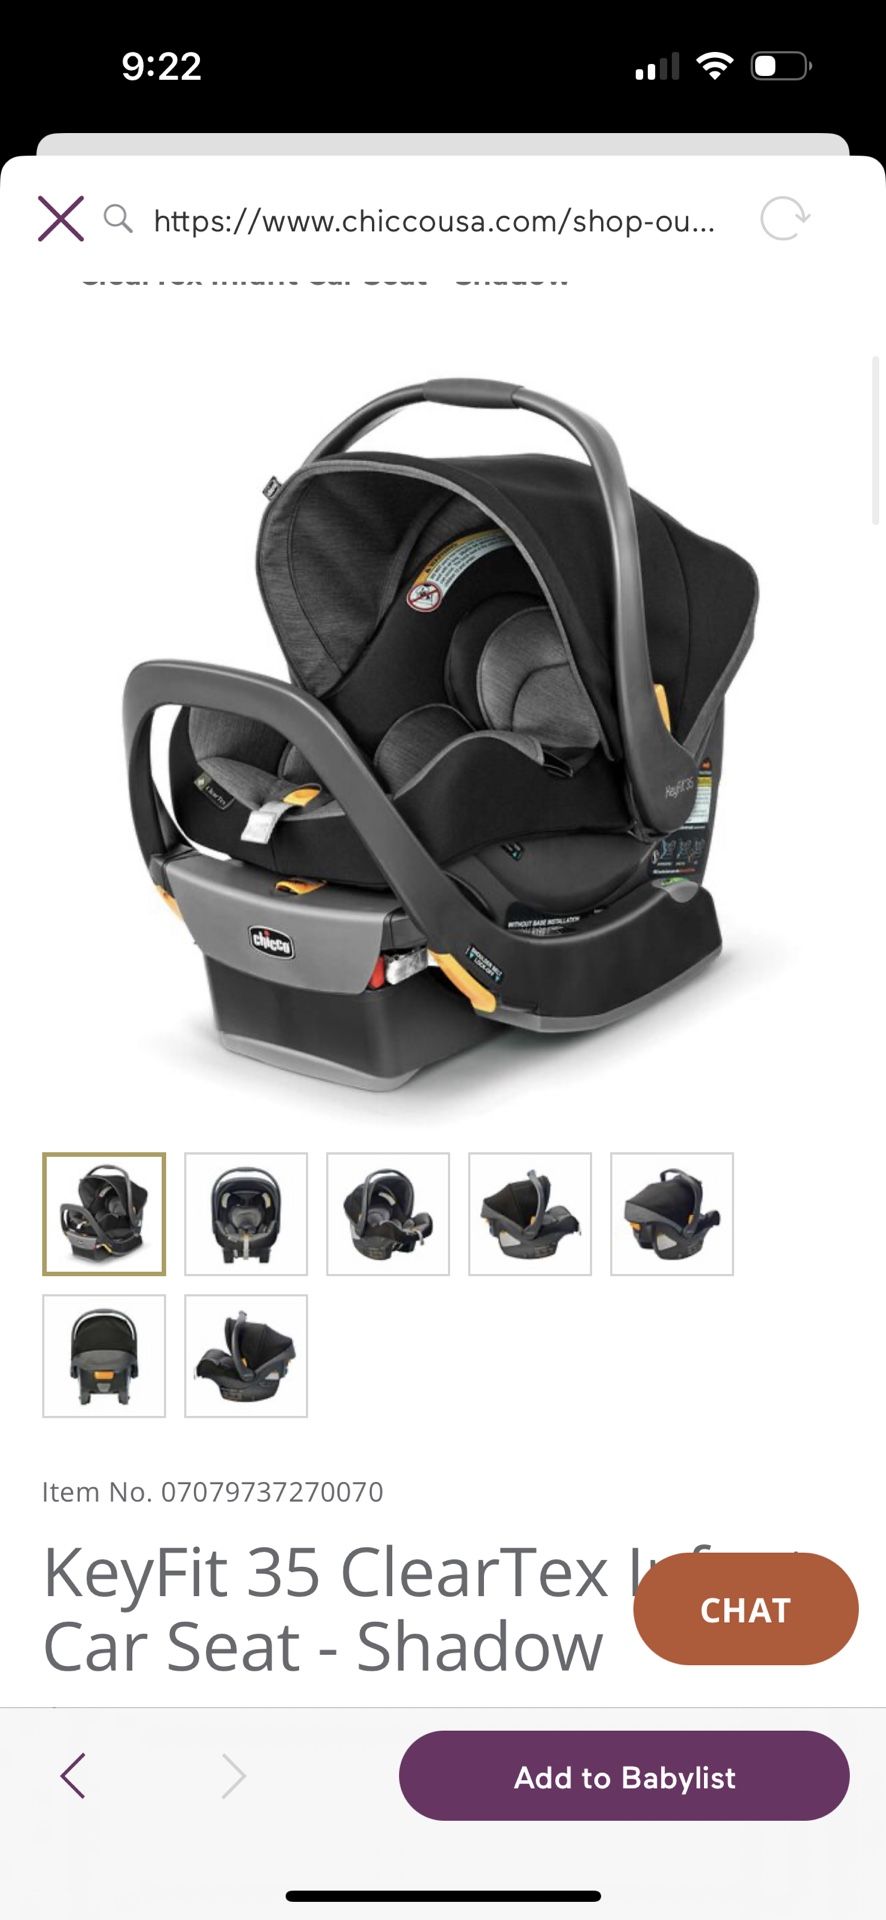 KeyFit 35 ClearTex Infant Car Seat - Shadow